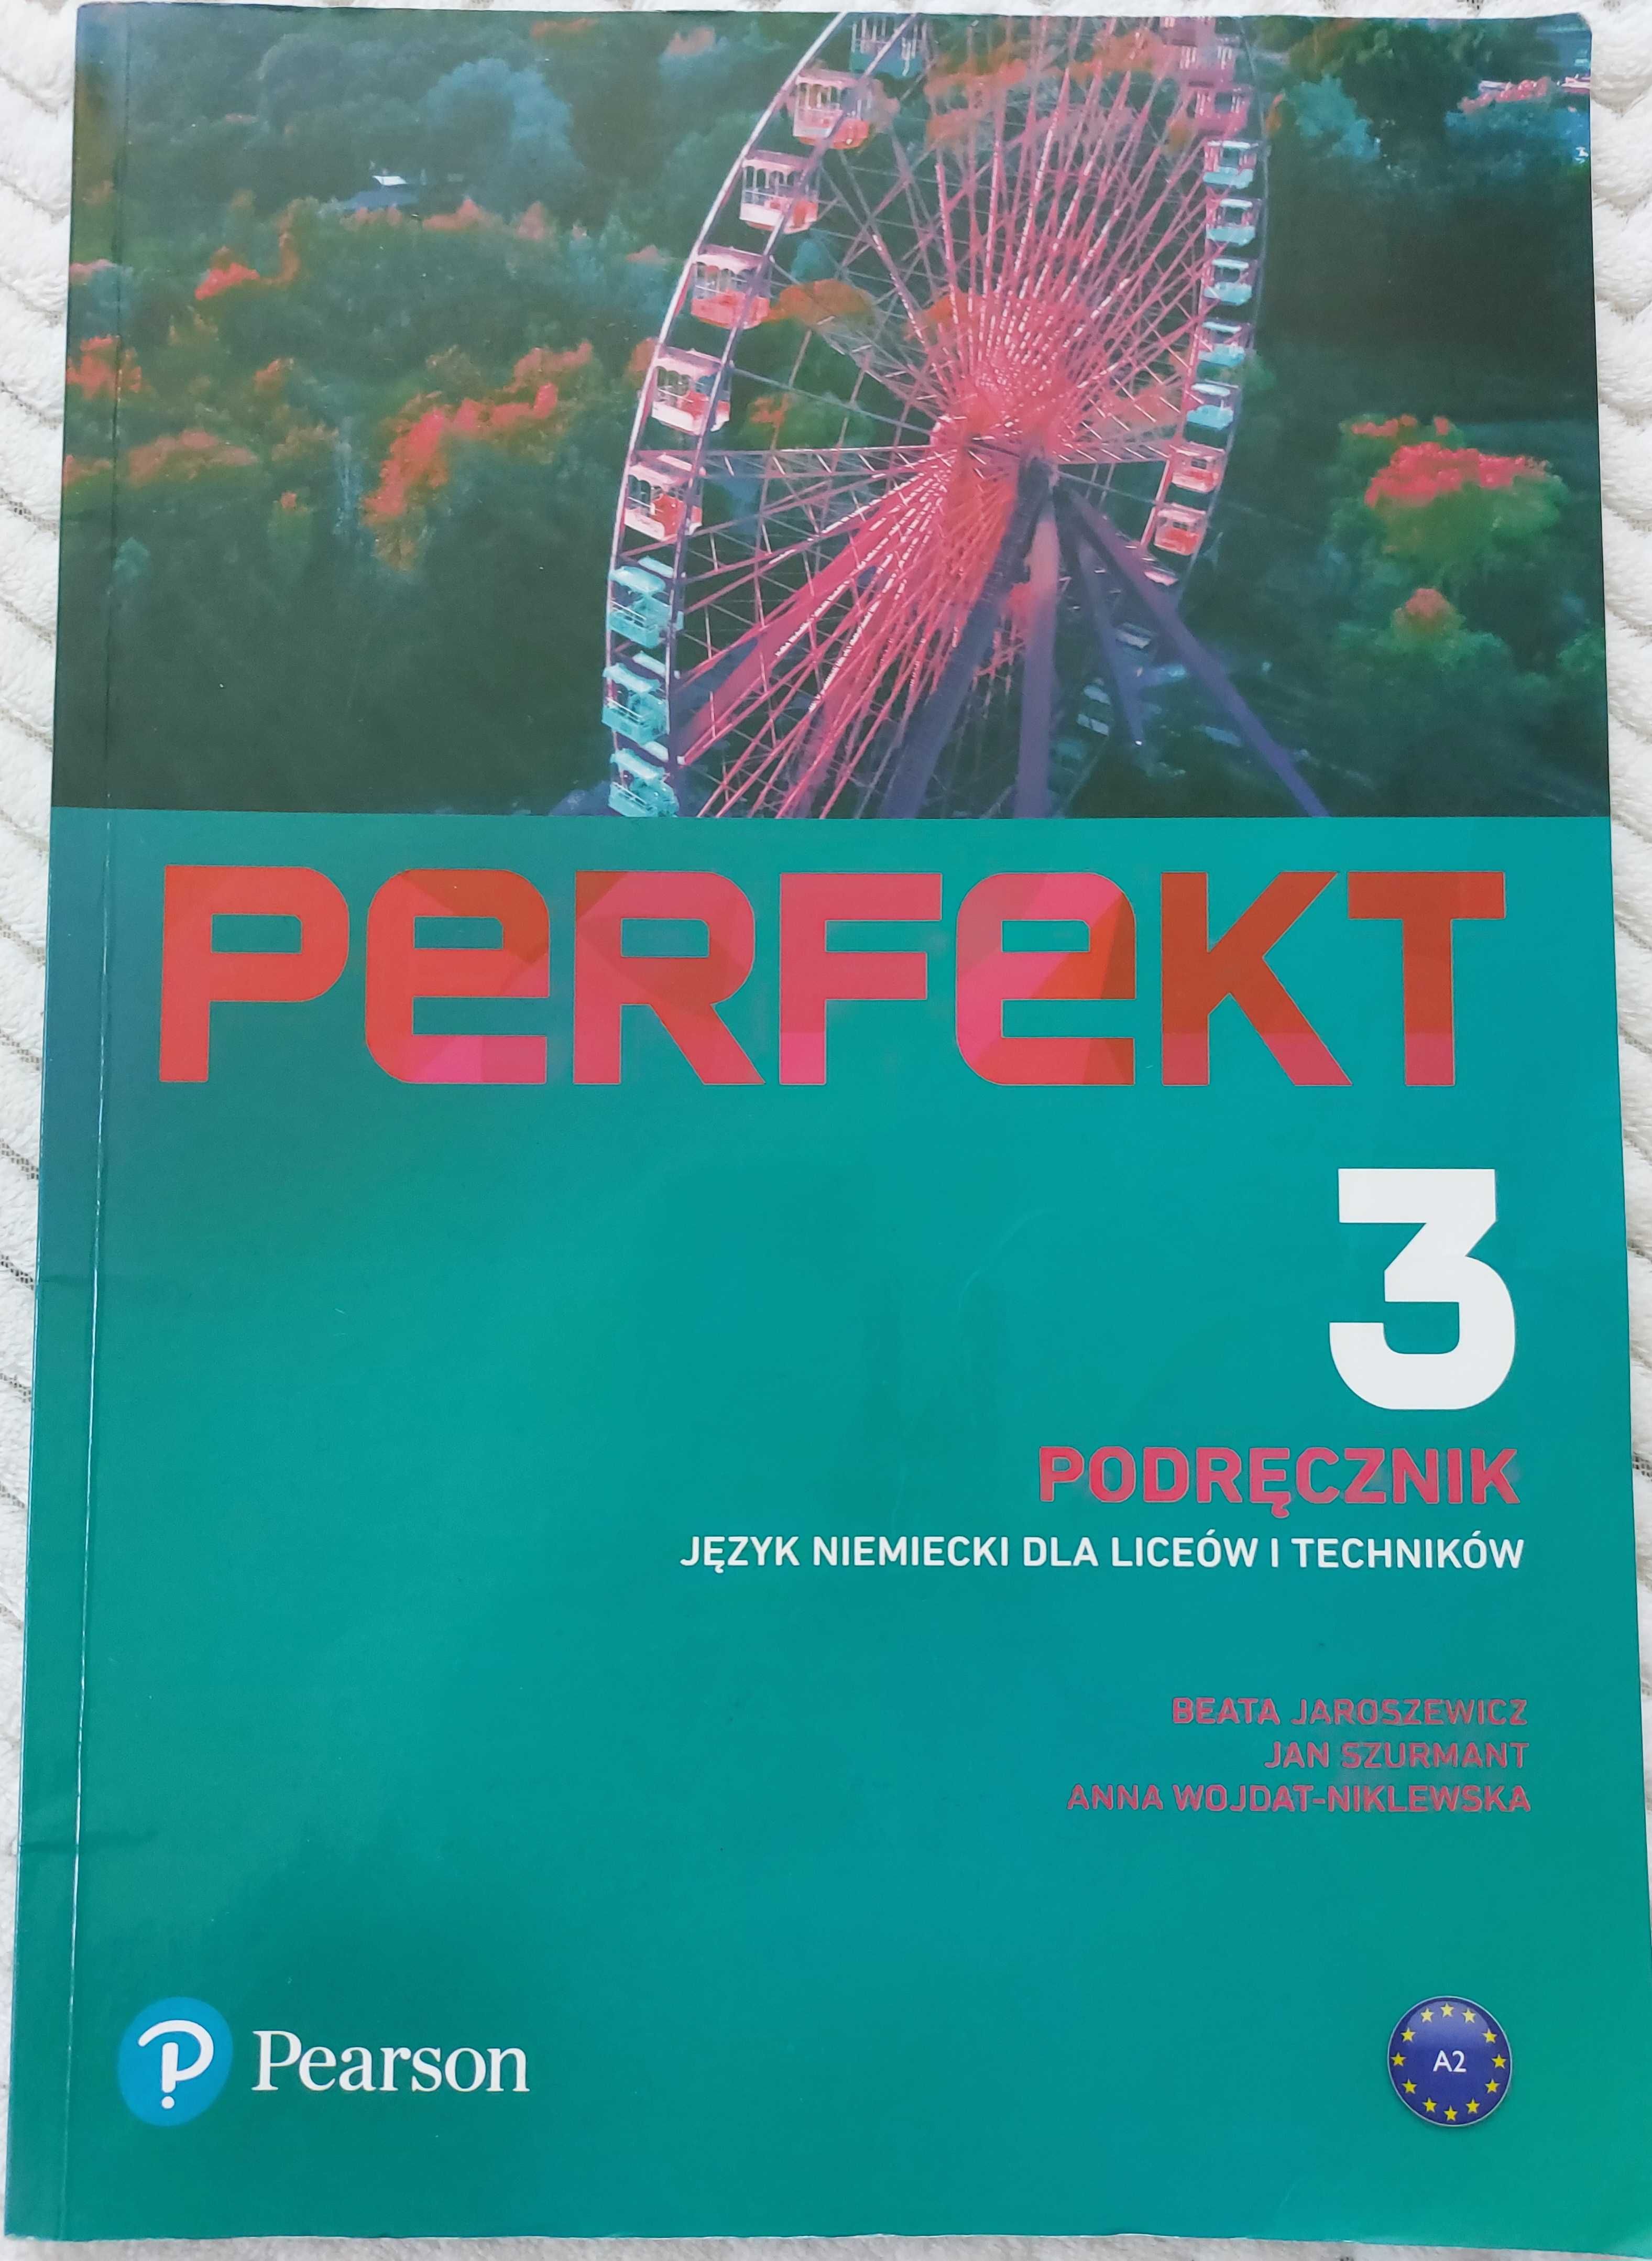 PERFEKT 3 podręcznik do języka niemieckiego